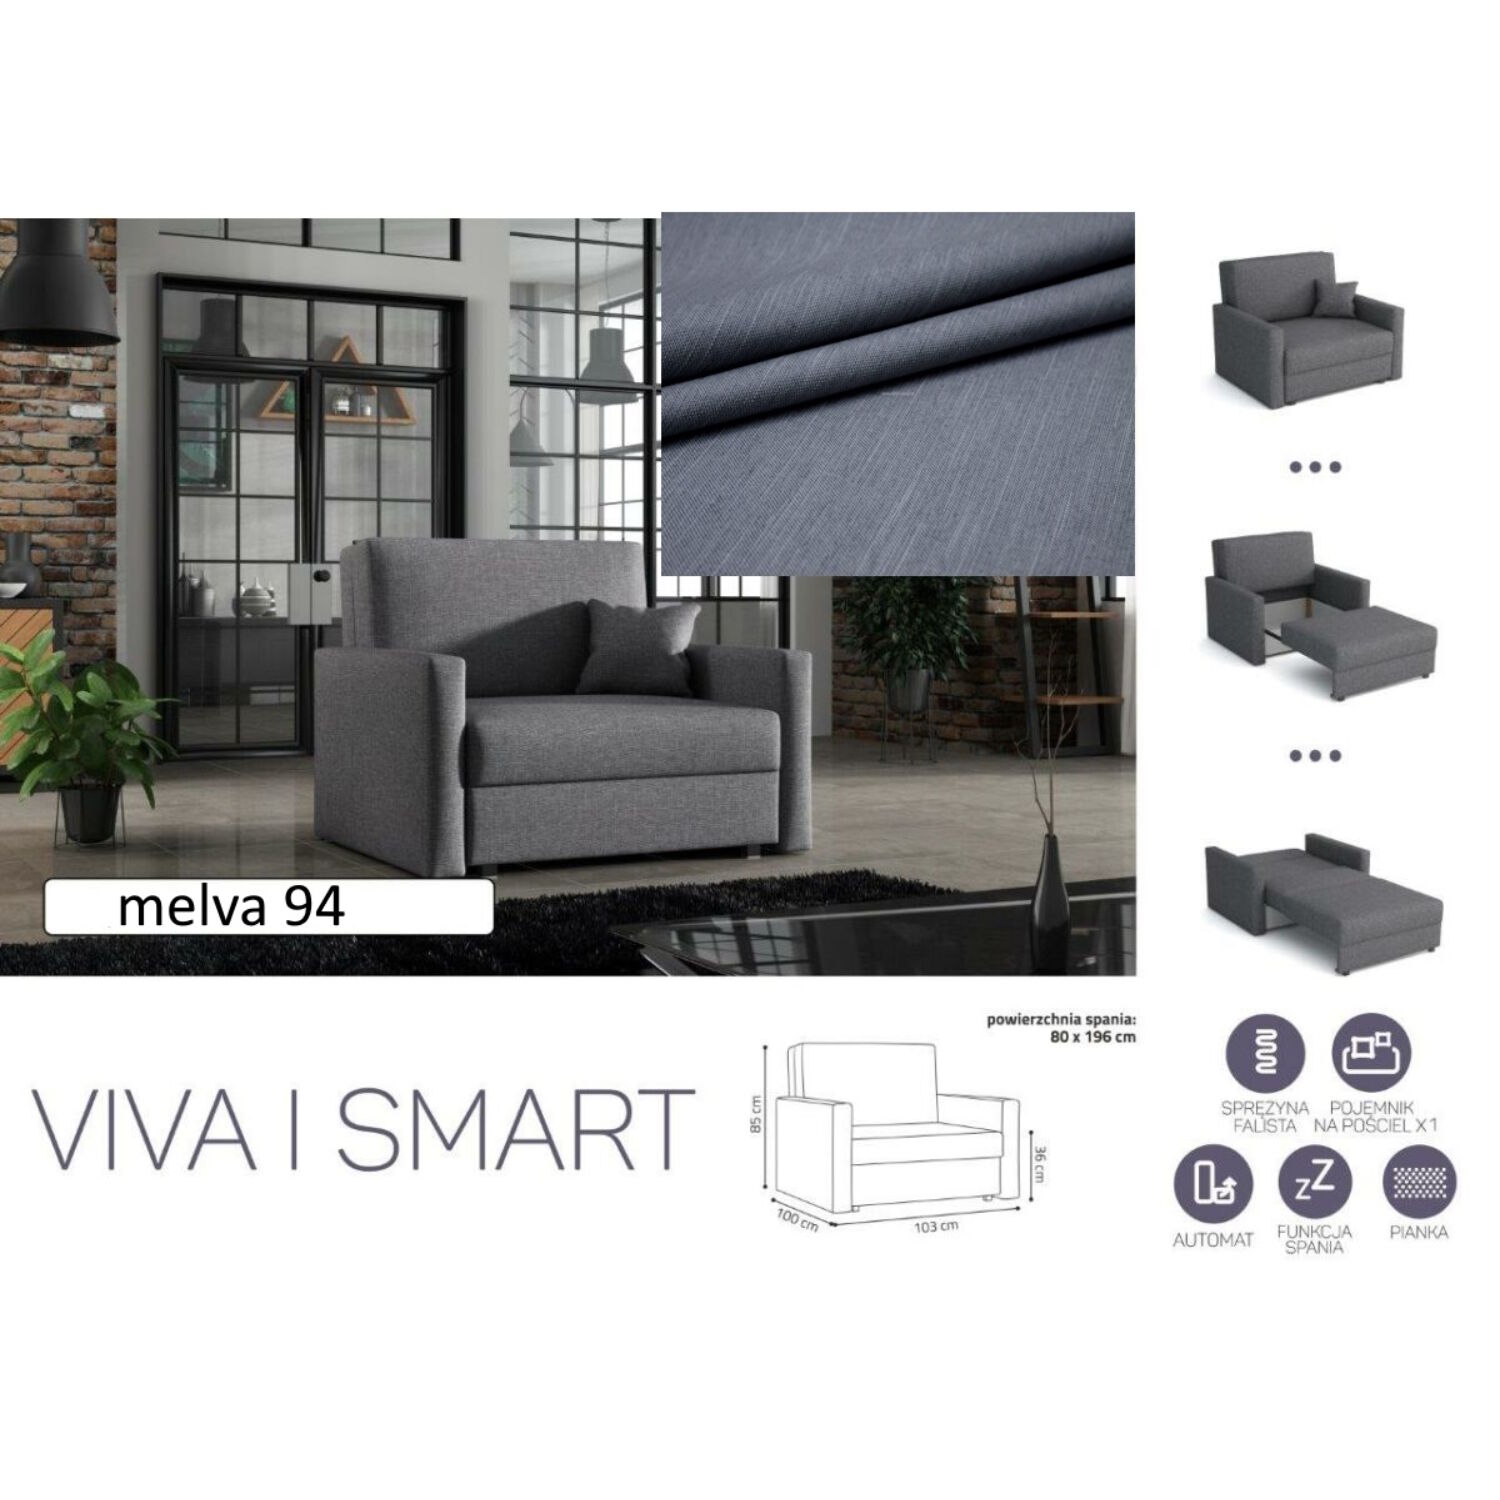 VIVA I SMART előre nyíló rugós, ágyneműtartós fotelágy